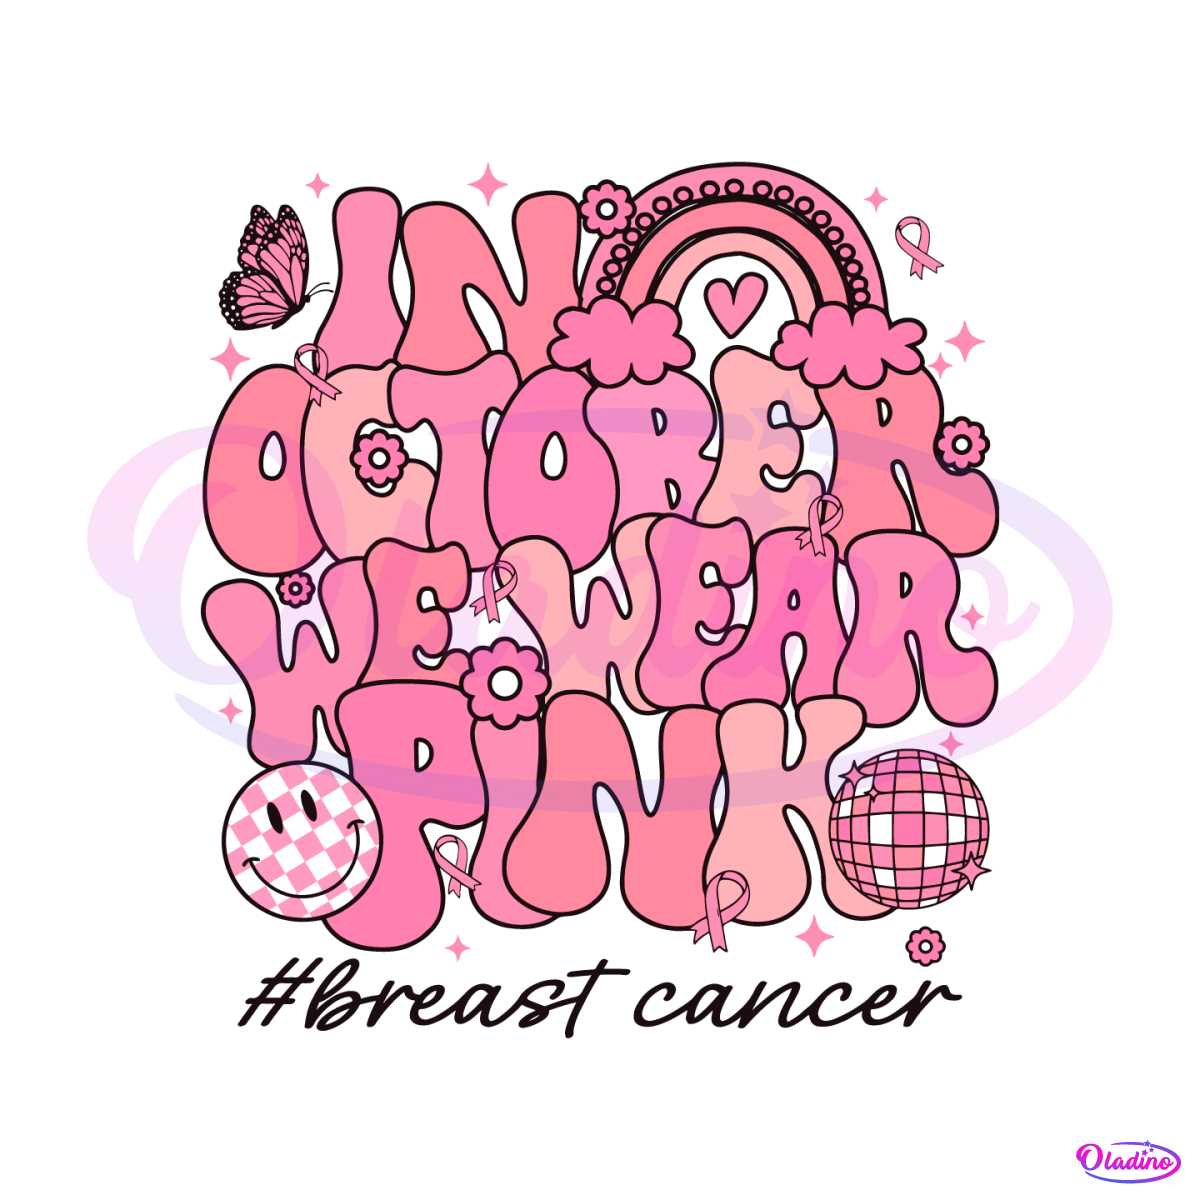 Retro Breast Cancer In October We Wear Pink SVG Download - Breast Cancer SVG